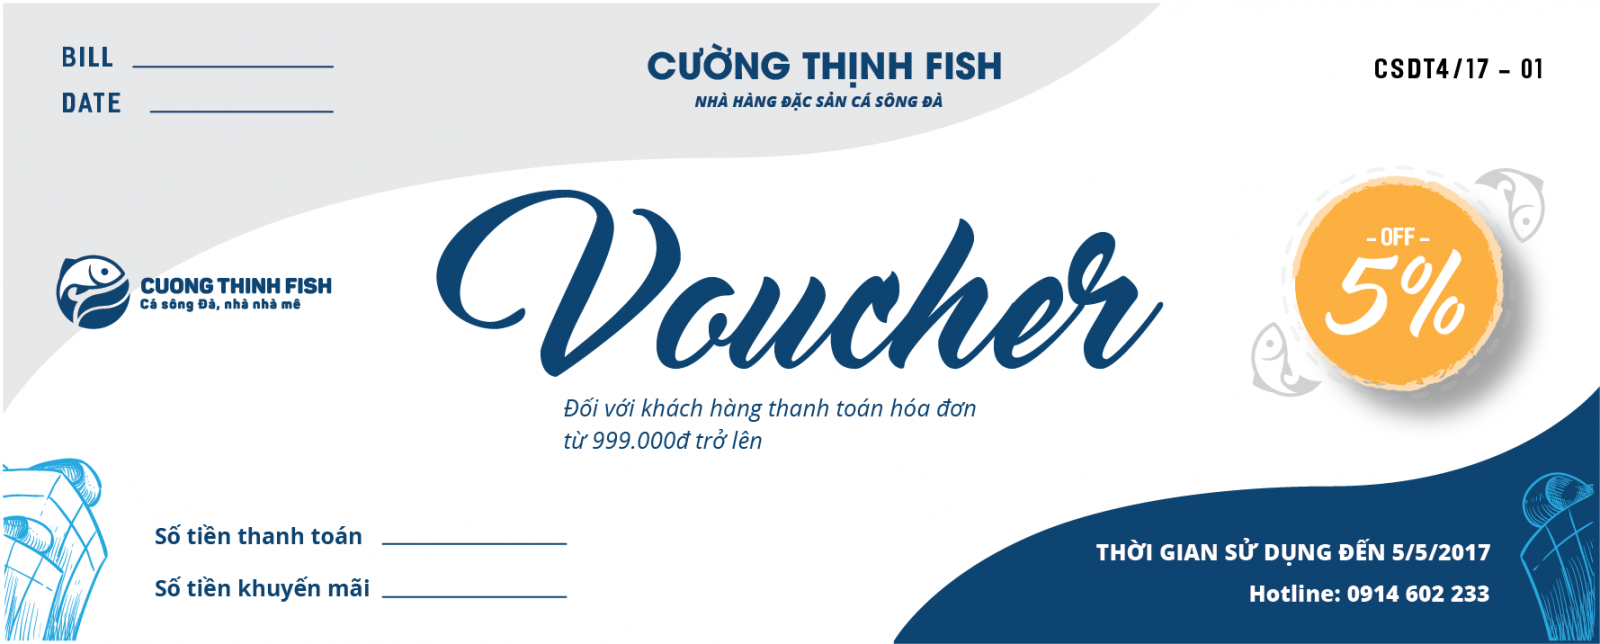 Voucher chỉ có giá trị thanh toán 1 lần tại hệ thống Nhà hàng, Cửa hàng Cá Sông Đà của Cường Thịnh FISH